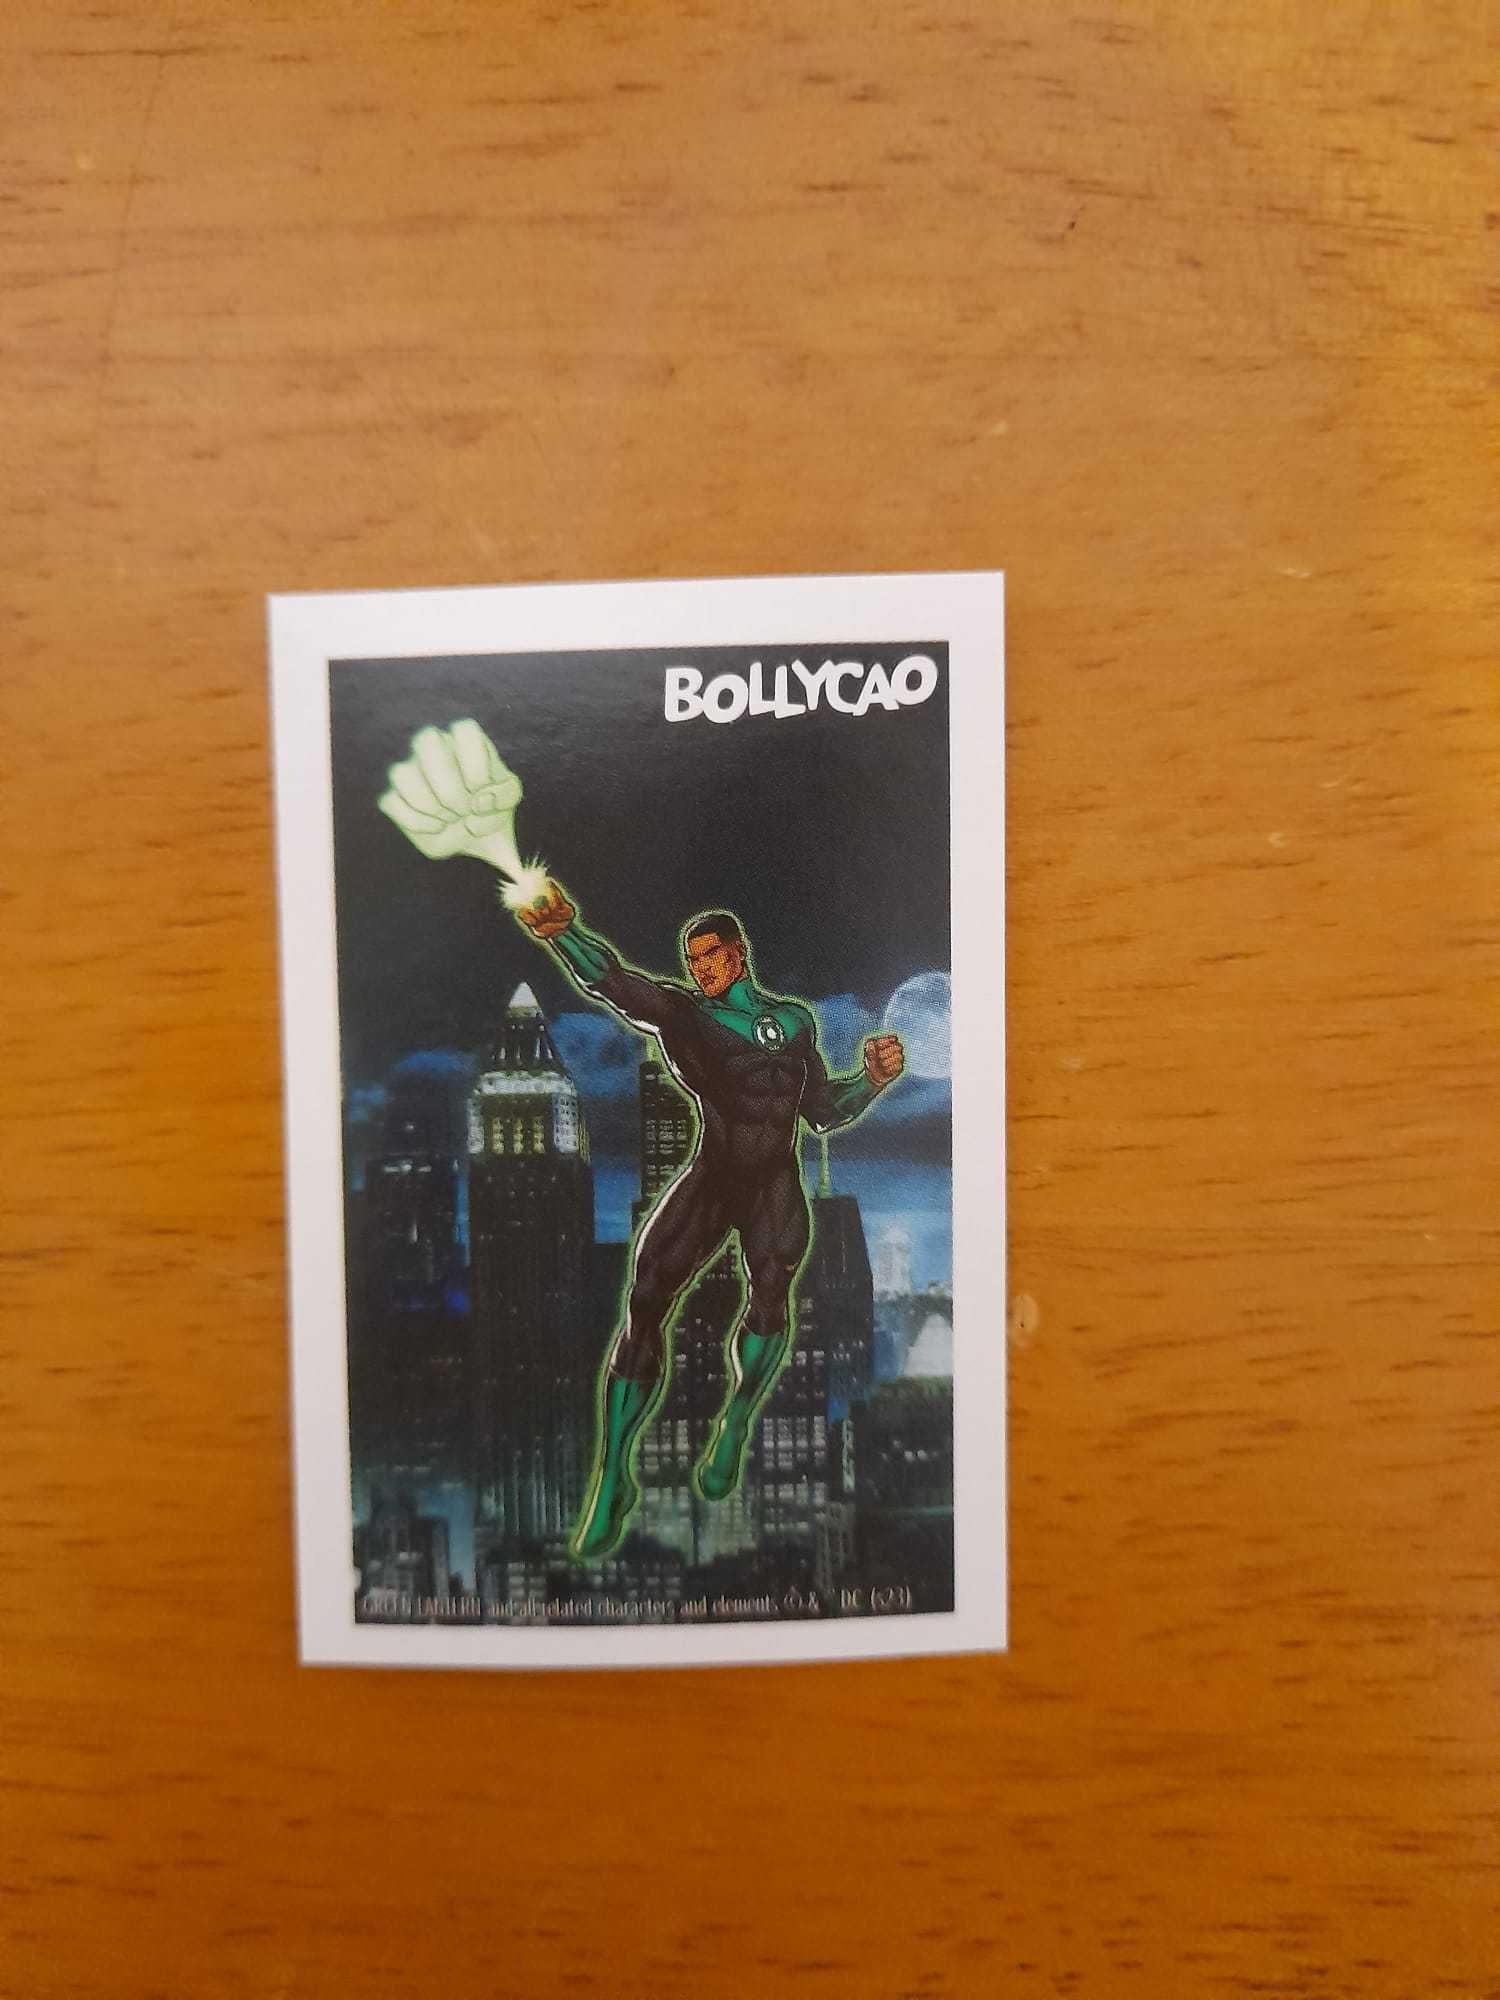 Cromos Colecção "DC" do Bollycao.